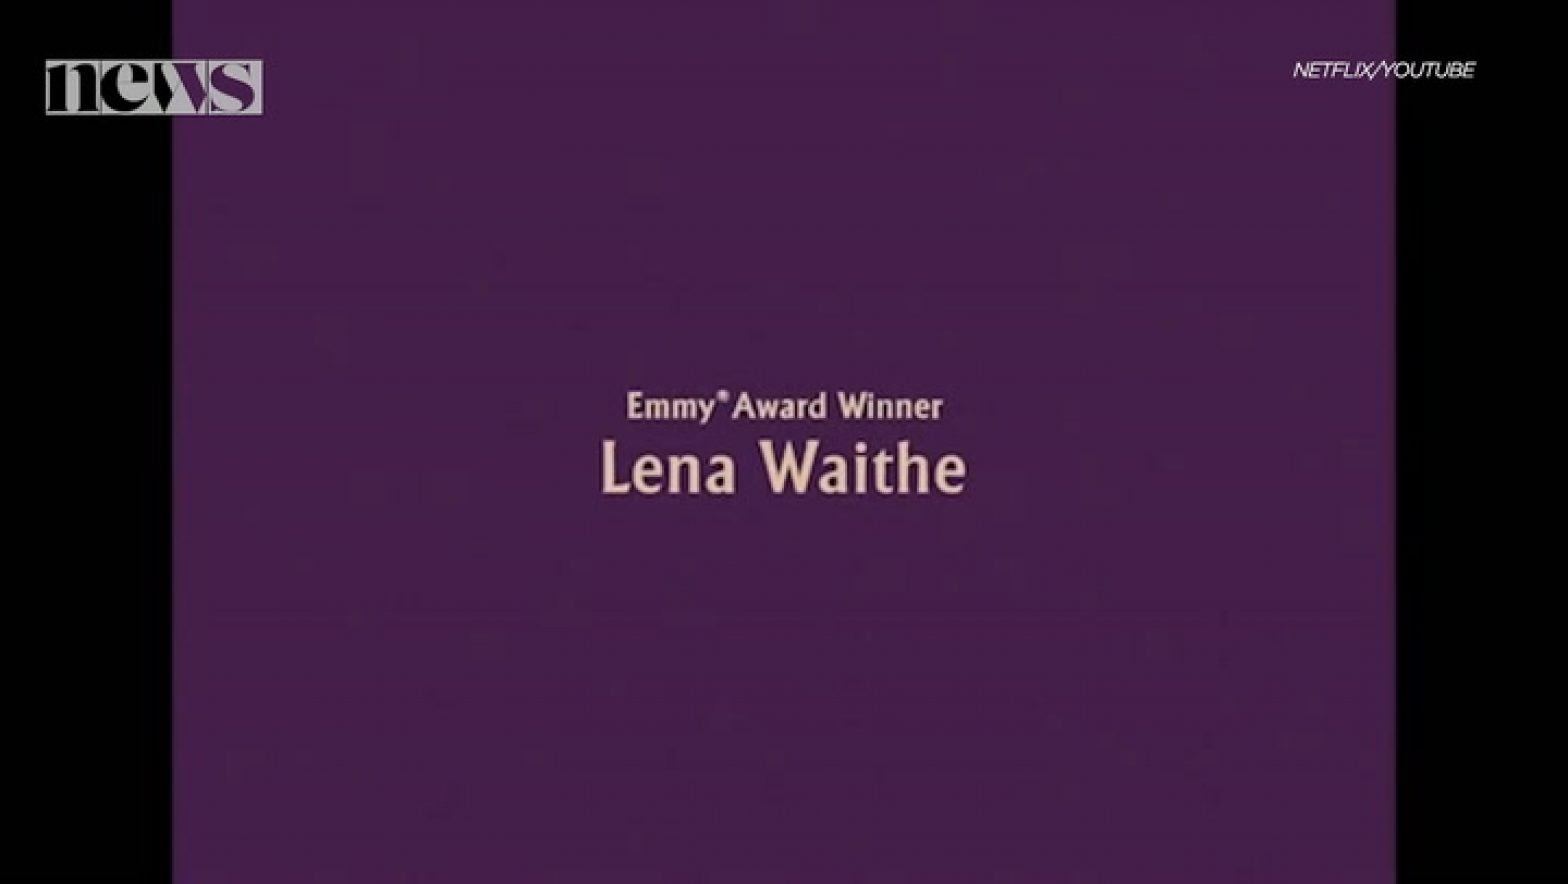 Essence Chats with Lena Waithe